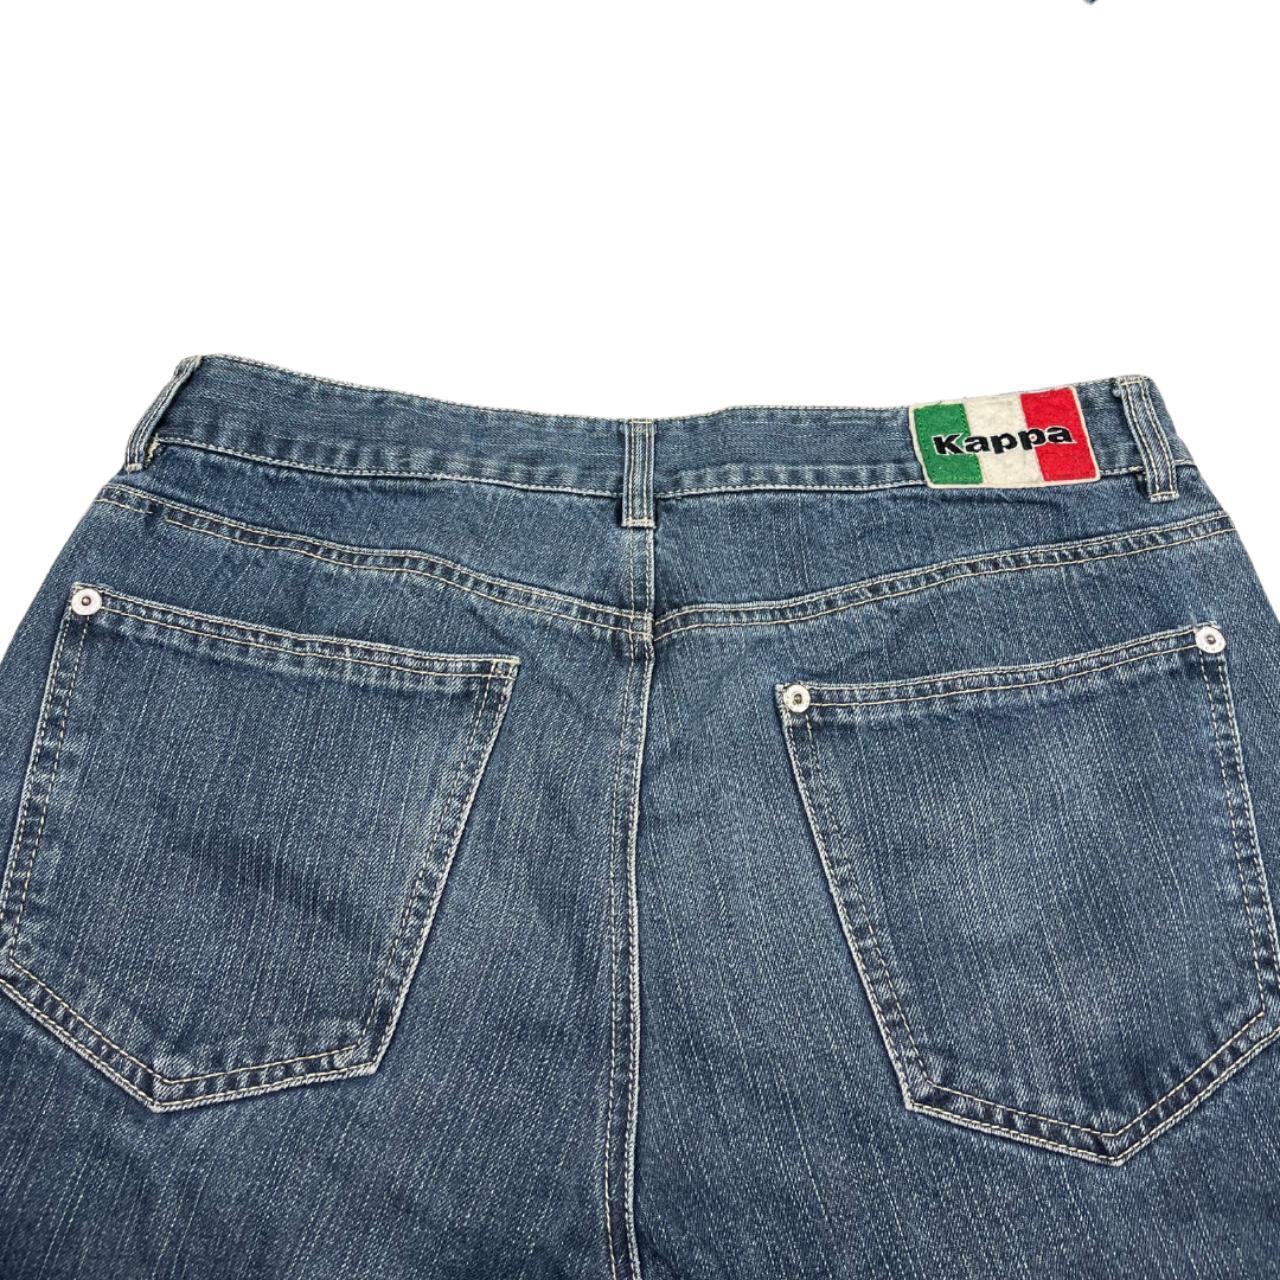 Vintage Kappa Italia Jeans - Straight leg -... - Depop